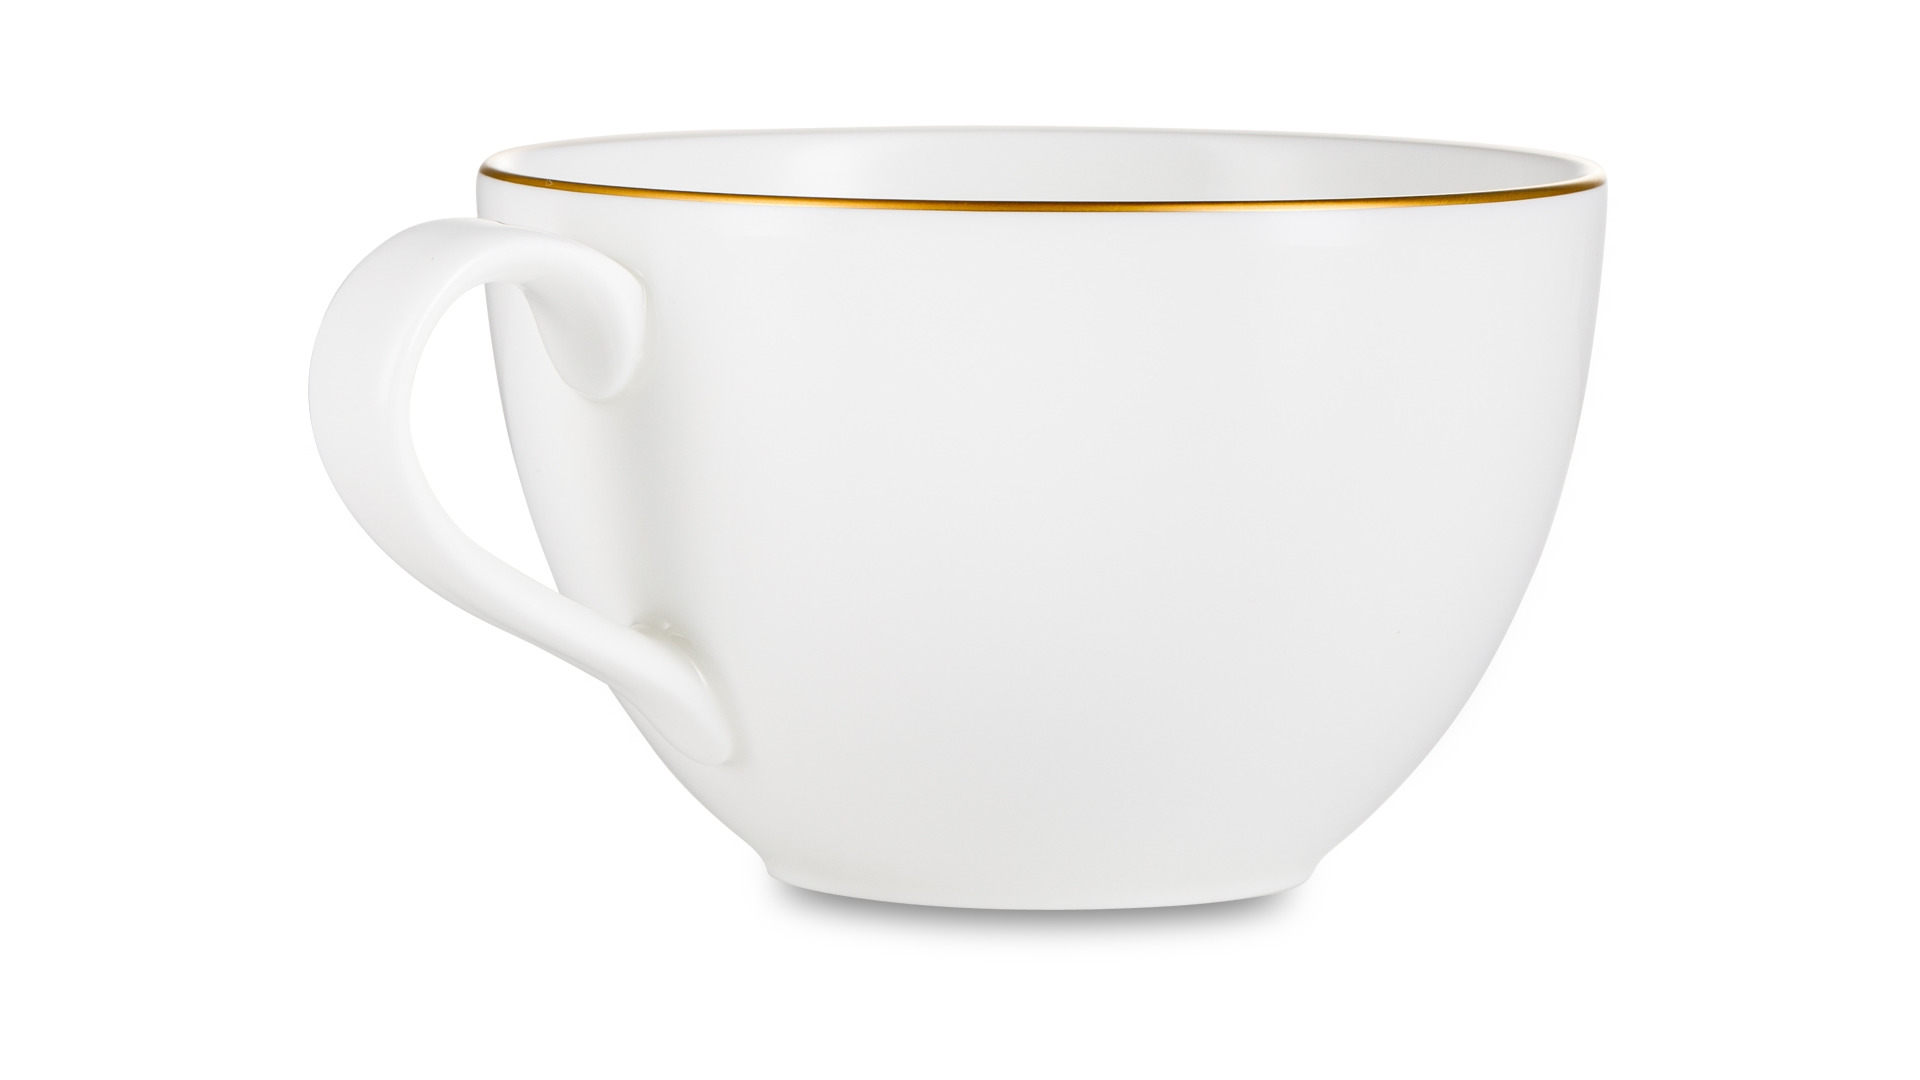 Чашка чайная Narumi Сверкающее Золото 270 мл, фарфор костяной